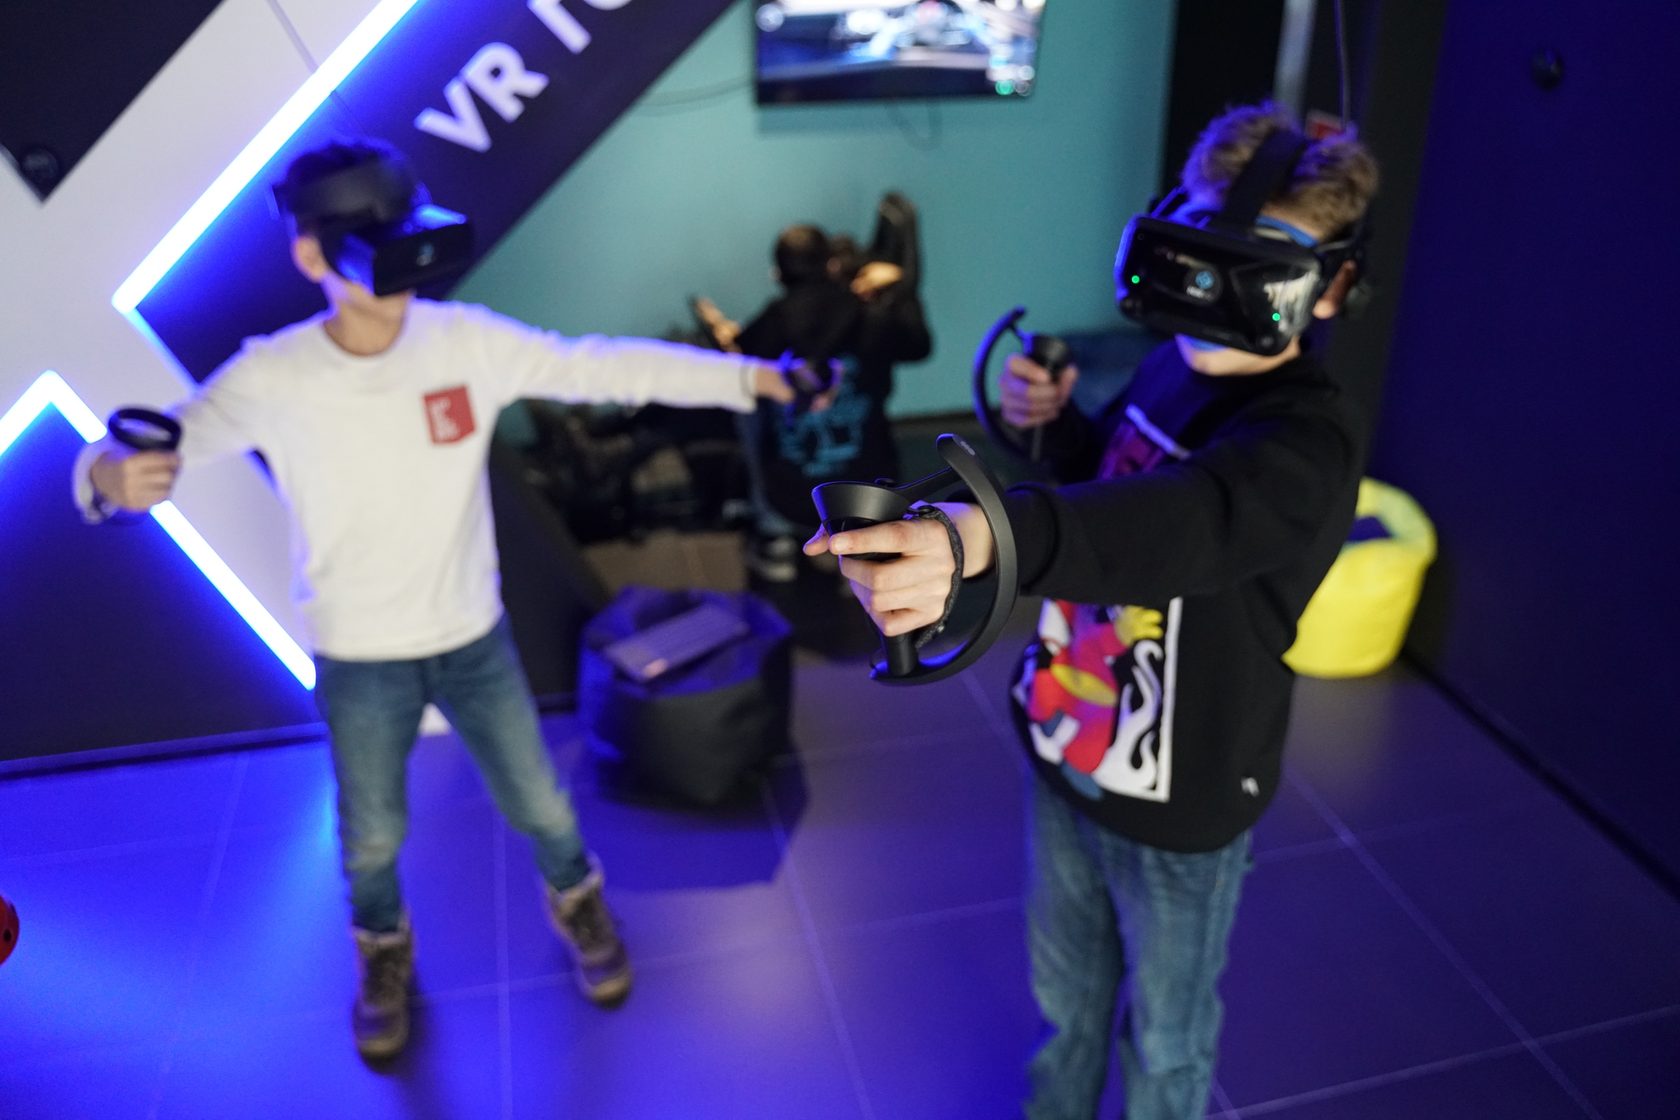 Vr франшиза. Парк виртуальной реальности mir VR, Санкт-Петербург. Mir VR родео драйв. Виртуальная реальность в парке. Франшиза виртуальной реальности.